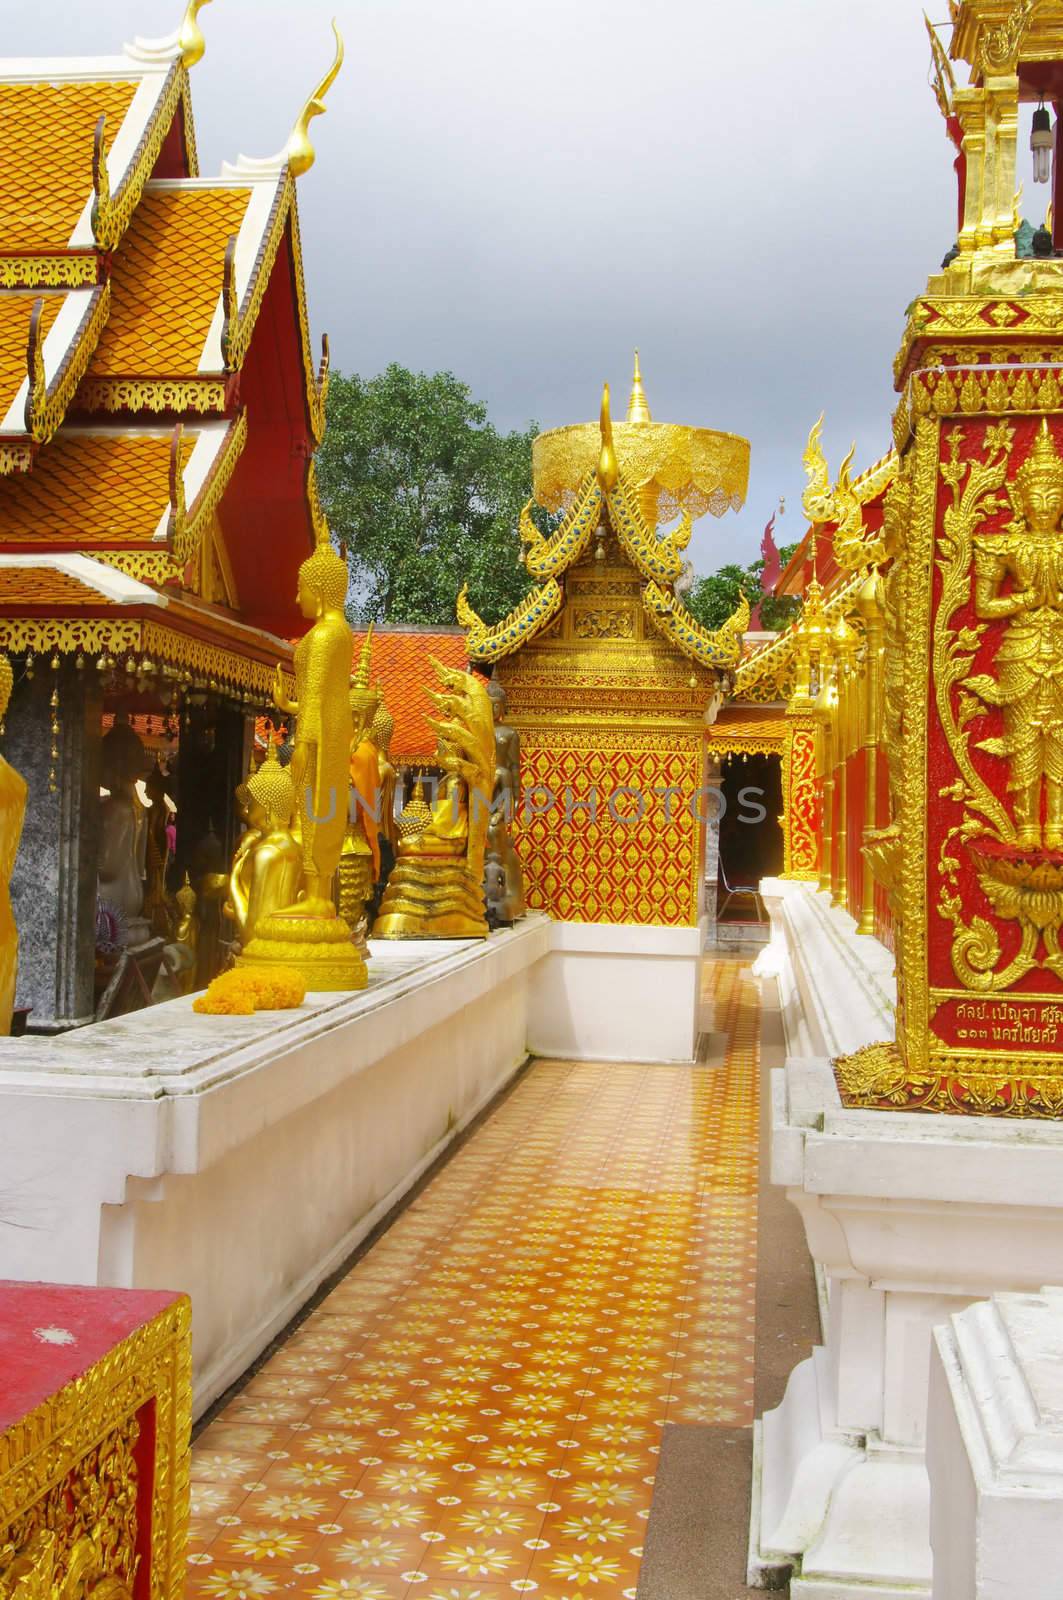 Vue dans le temple de Wat Phrathat Doi Suthep by Duroc